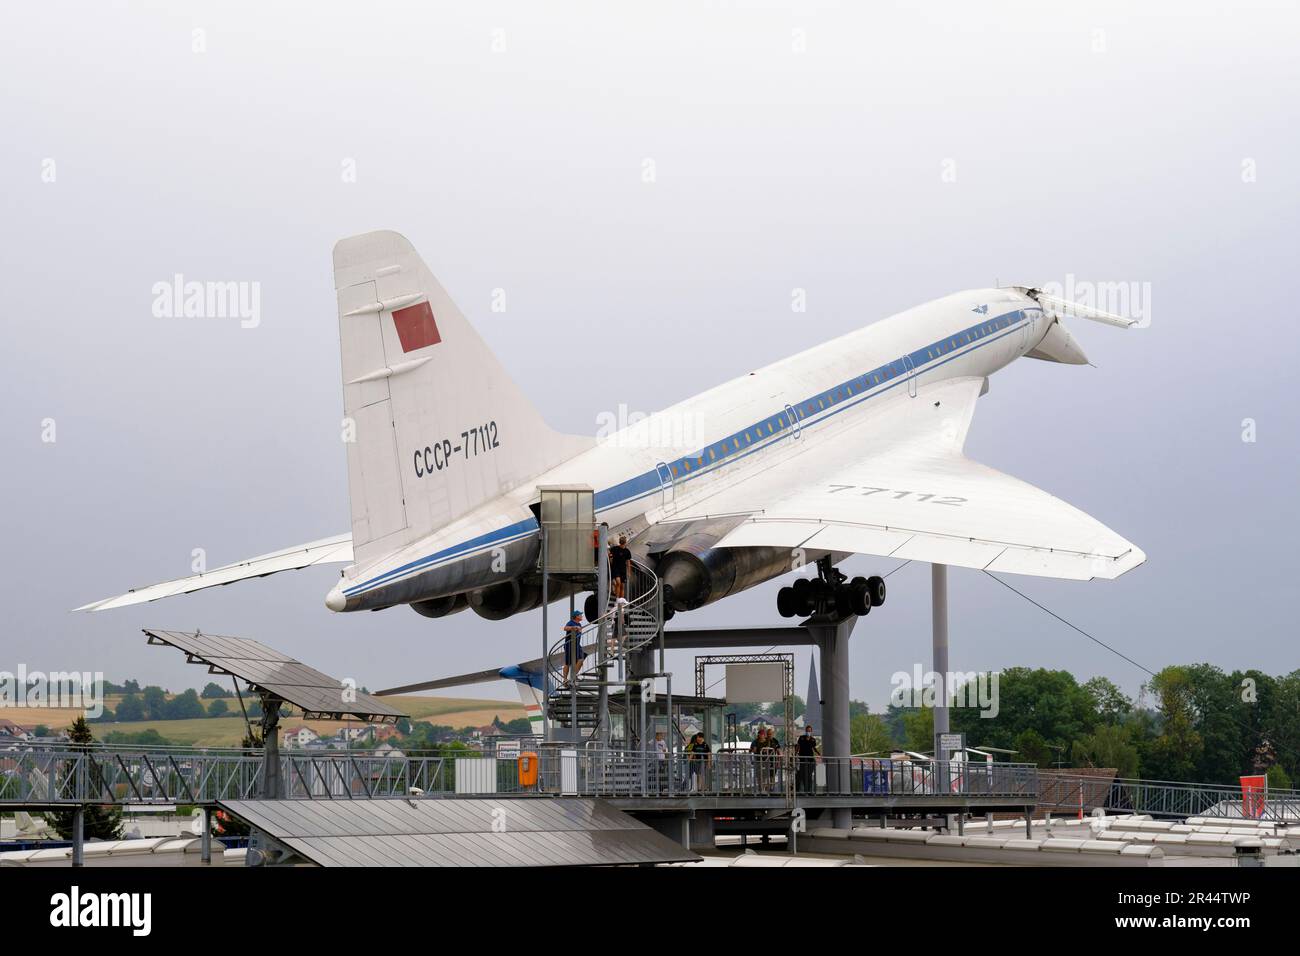 Alemania, Baden-Wurttemberg: El Museo Technik Sinsheim, museo de la tecnología. Tupolev Tu-144 avión de pasajeros supersónico perteneciente al avión ruso Foto de stock